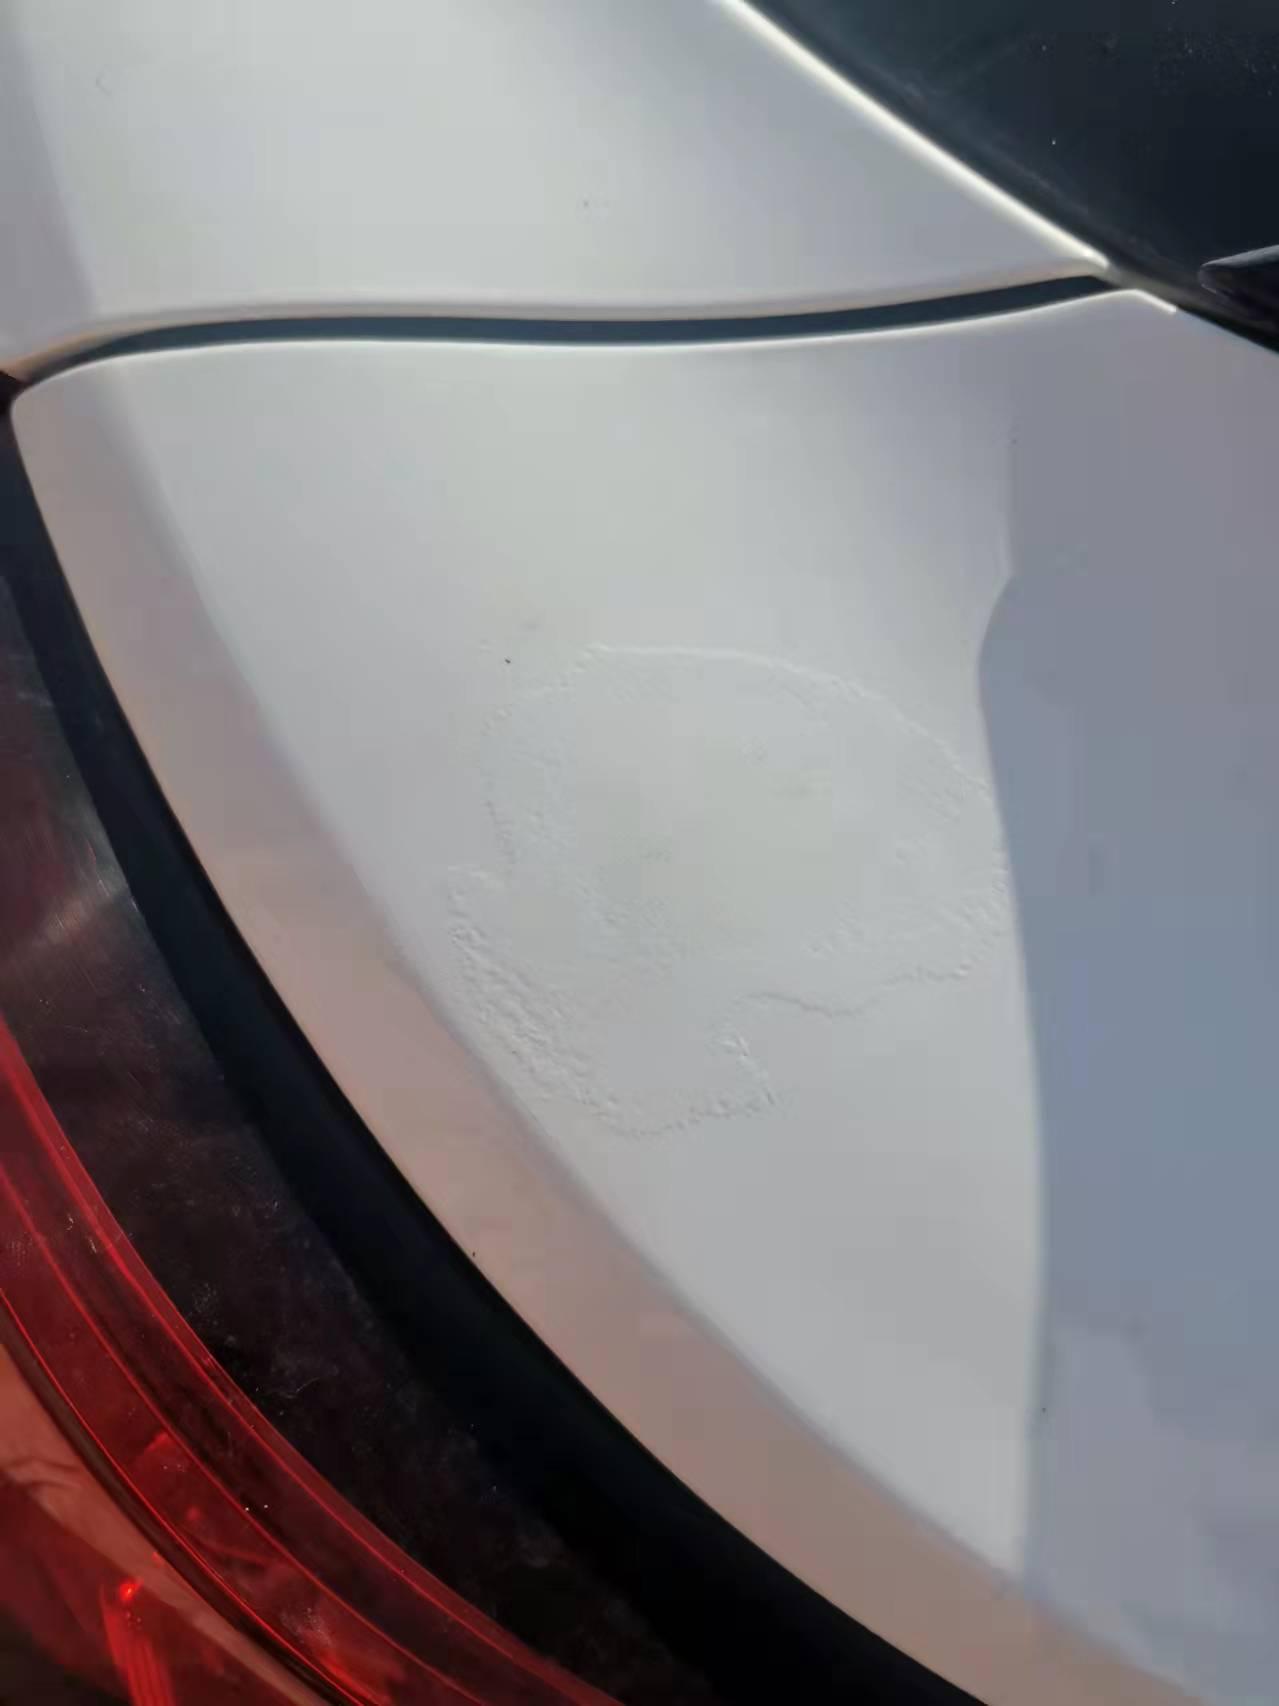 名爵ZS 开了一年多，车子尾部油漆起泡了，4S店说是原车漆问题，可以要求厂家索赔。大家觉得可以索赔多少呢